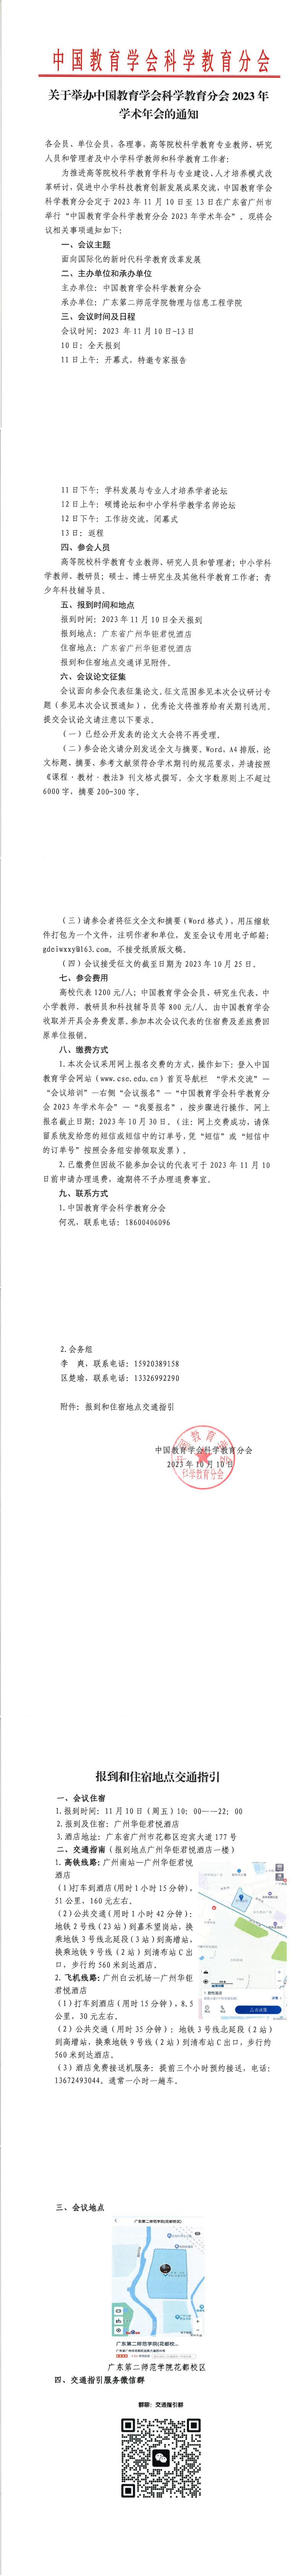 中国教育学会科学教育分会2023年学术年会_00.jpg